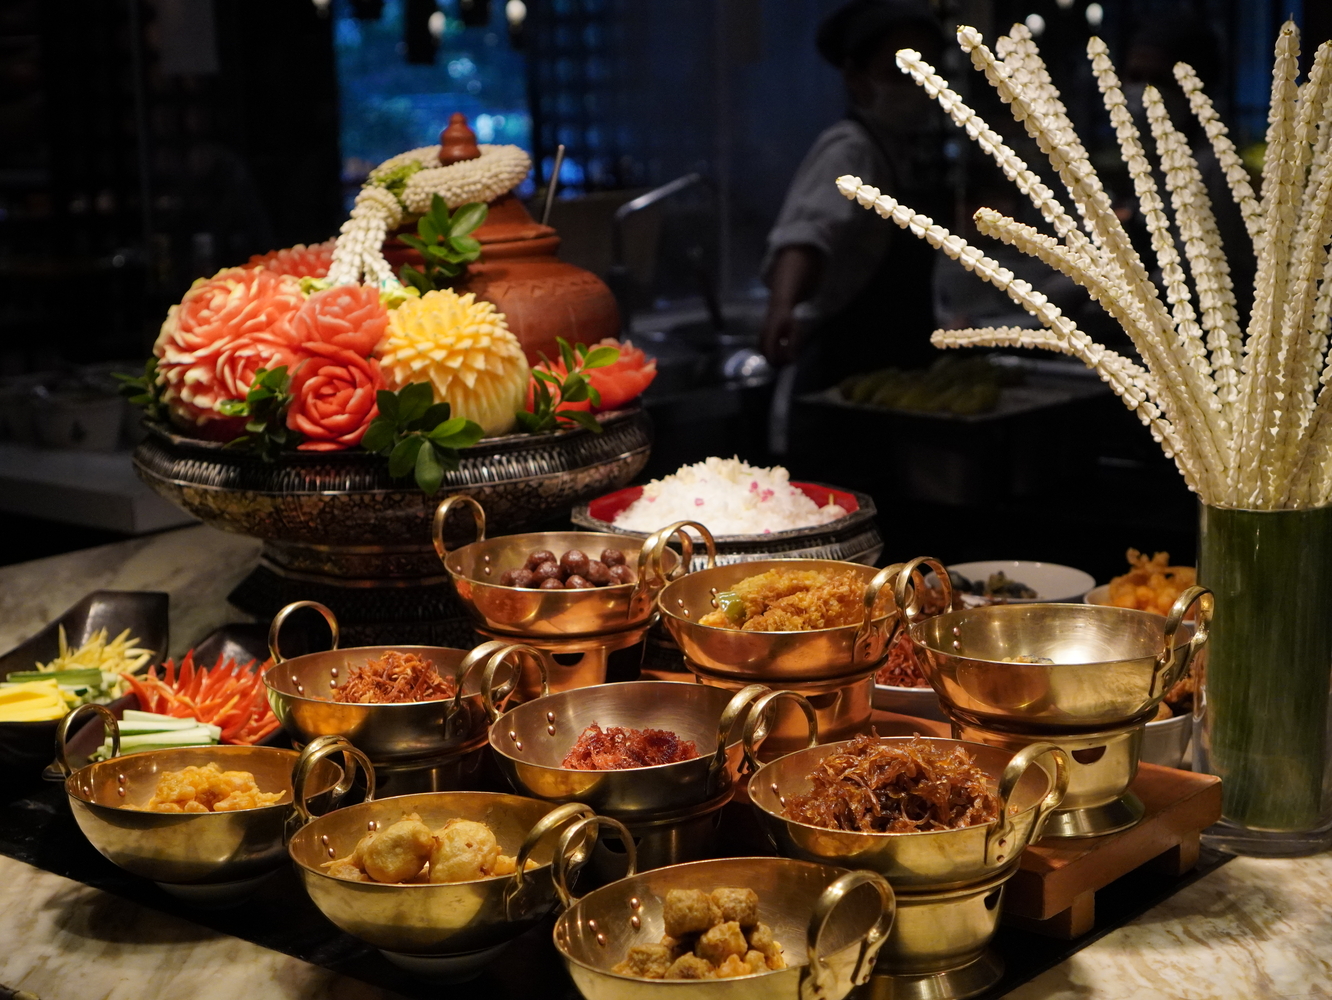 ฉลองเทศกาล “วันสงกรานต์” ปีใหม่ไทย ด้วยบุฟเฟต์นานาชาติและ เมนูจากร้านอาหารรับเชิญชื่อดัง ณ ห้องอาหารโกจิ คิทเช่น + บาร์